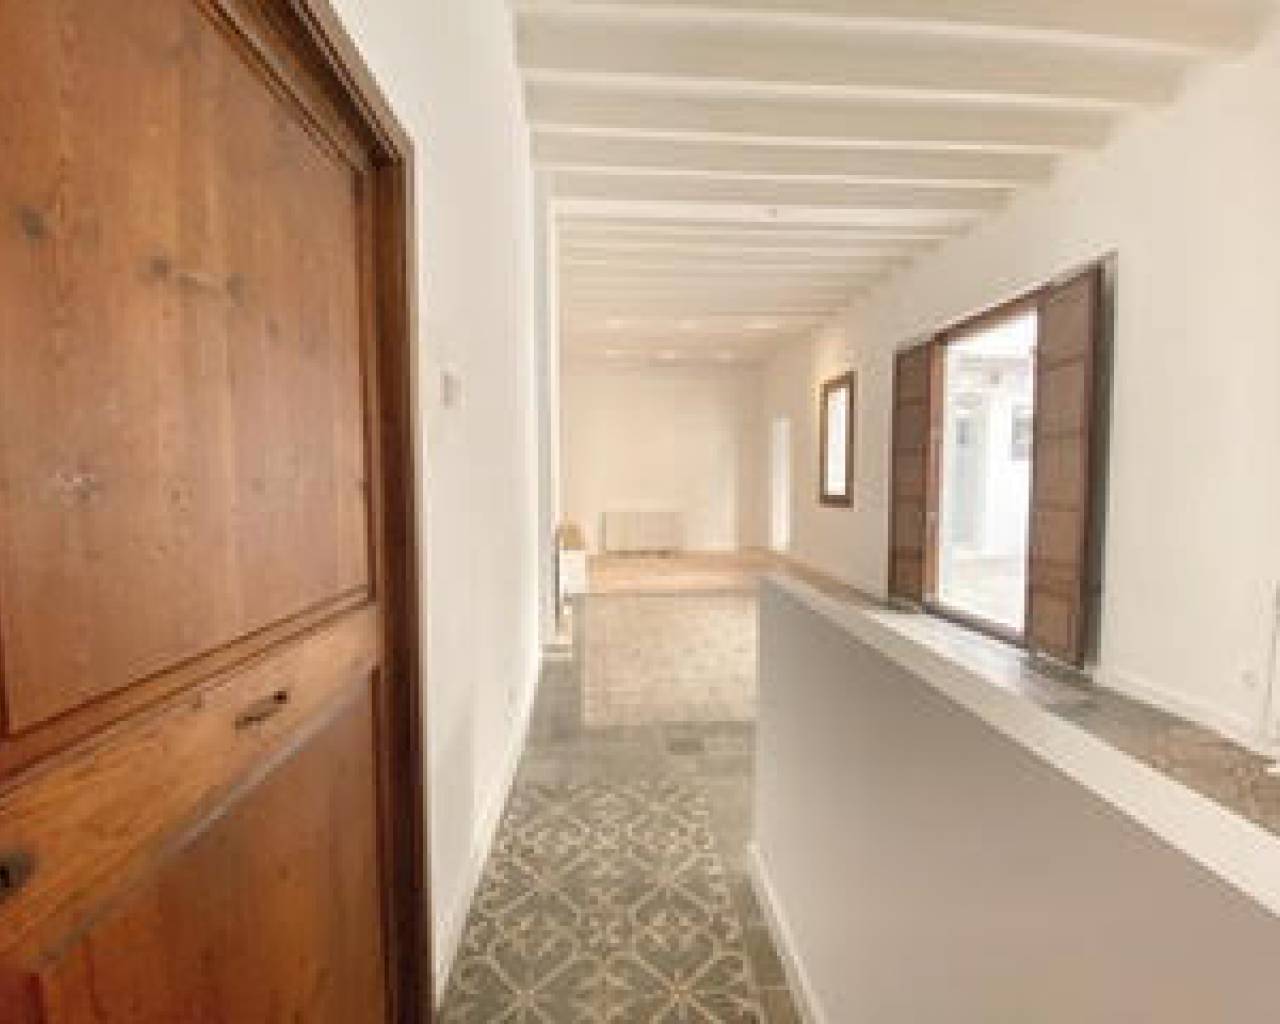 Property for rent in Palma de Mallorca-Mallorca estate agents